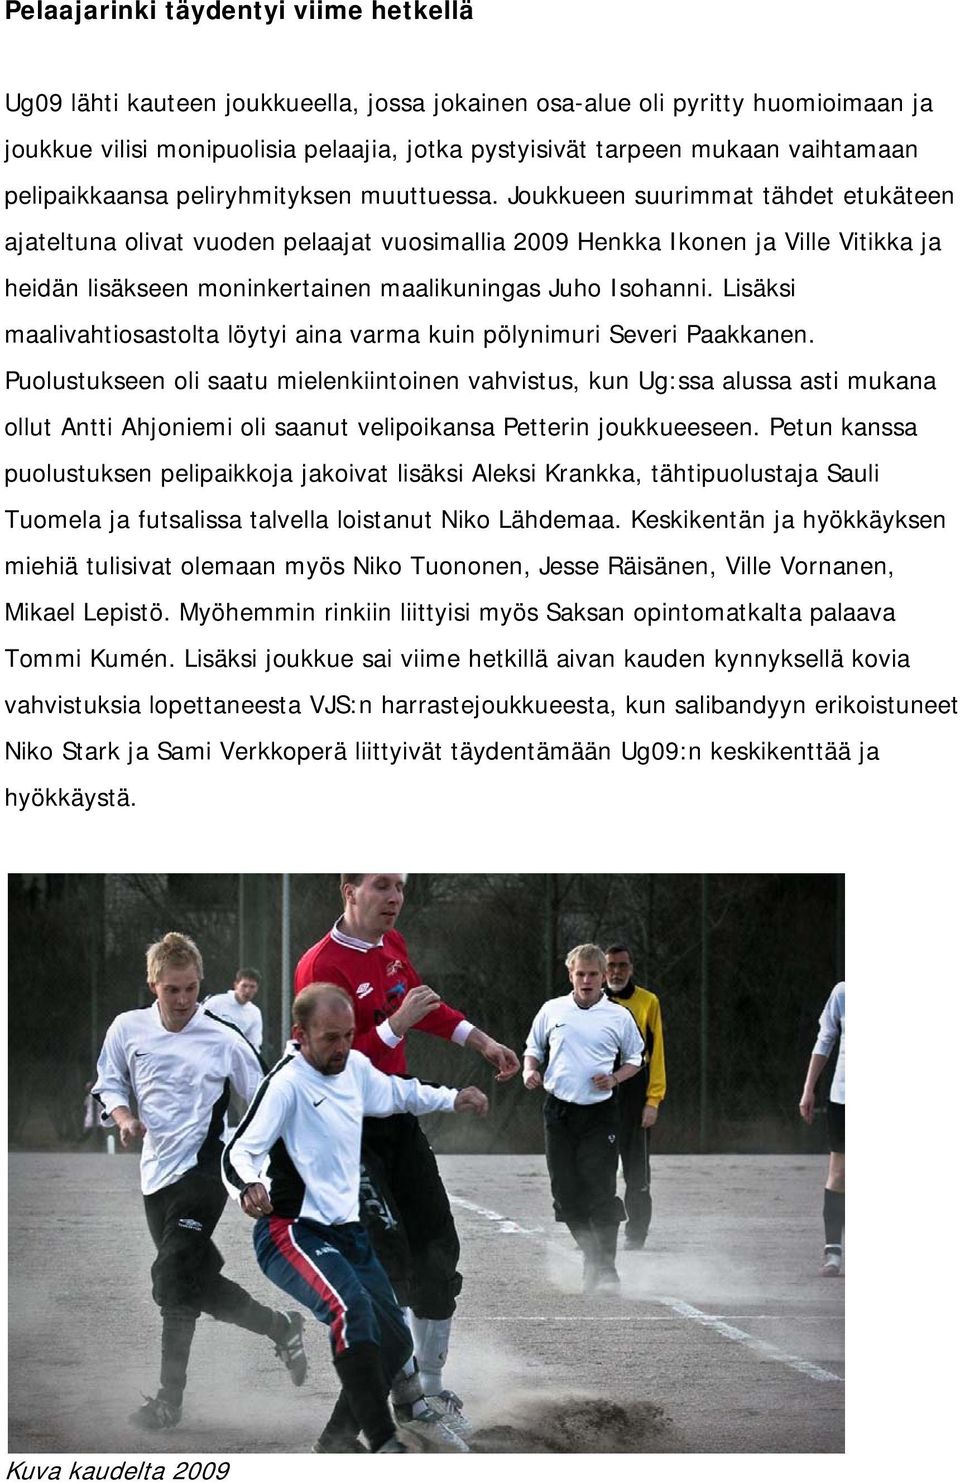 Joukkueen suurimmat tähdet etukäteen ajateltuna olivat vuoden pelaajat vuosimallia 2009 Henkka Ikonen ja Ville Vitikka ja heidän lisäkseen moninkertainen maalikuningas Juho Isohanni.